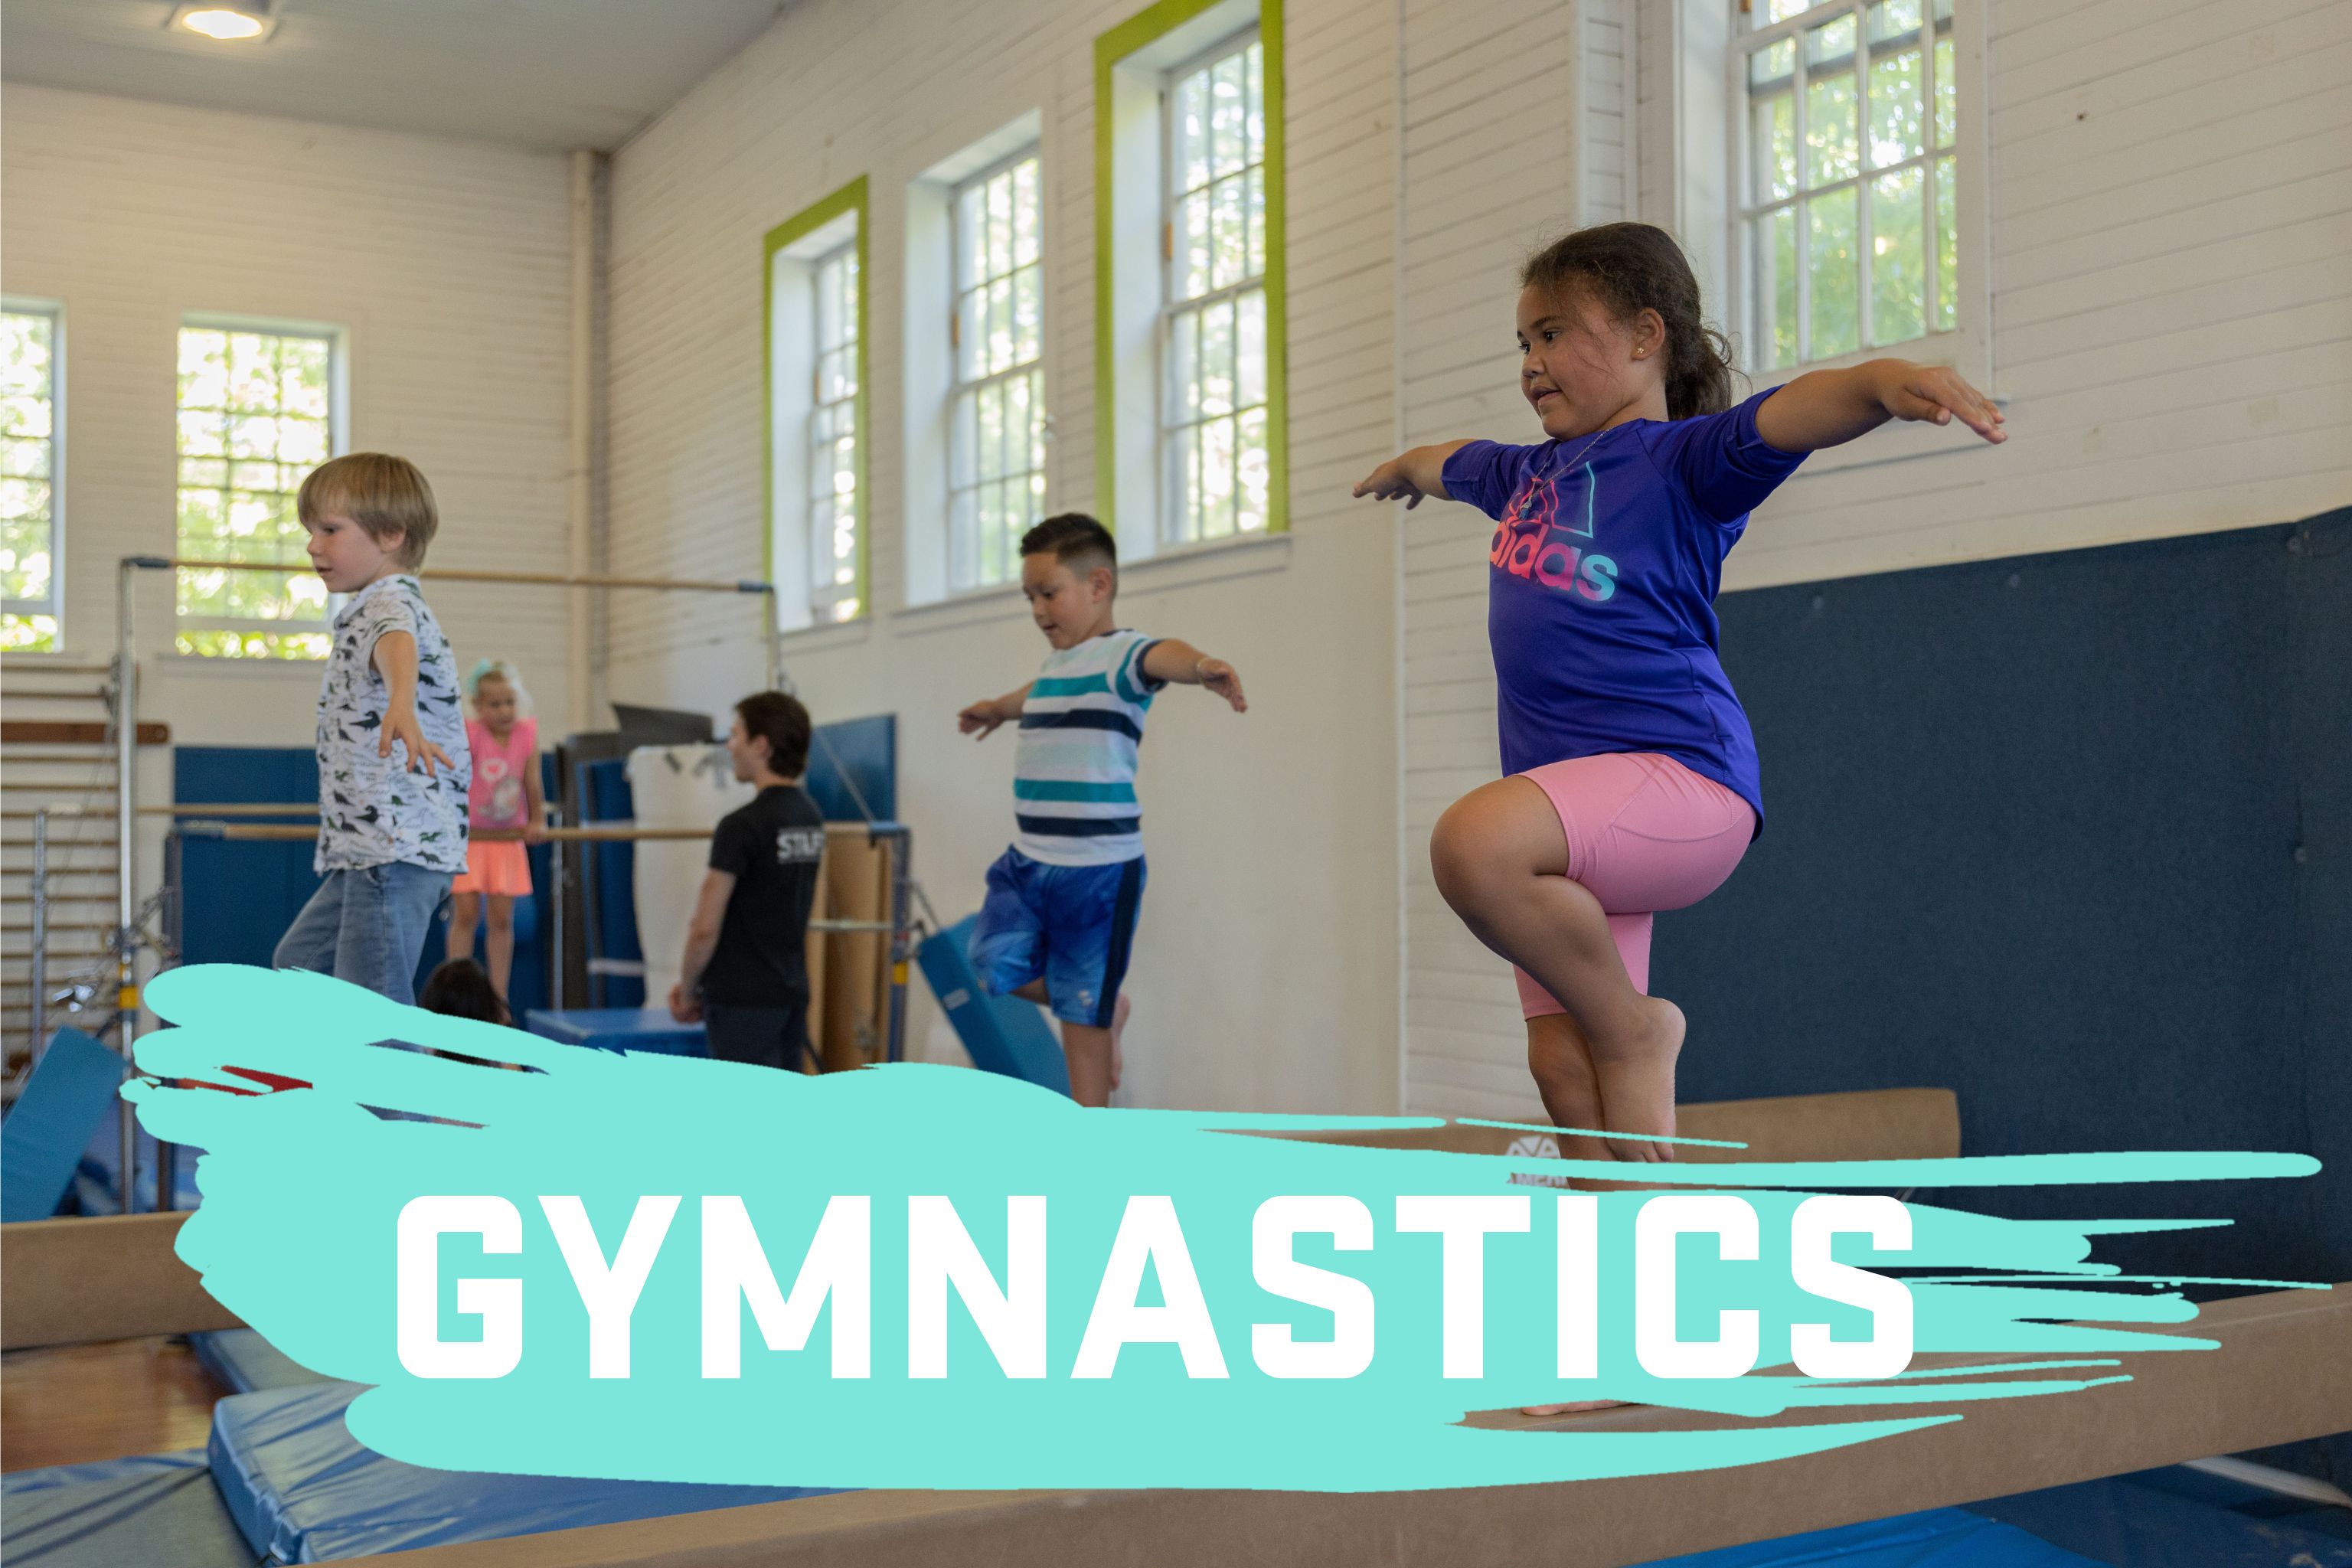 KidSpirit Recreation Gymnastics Best Program for kids Youth Gymnastics